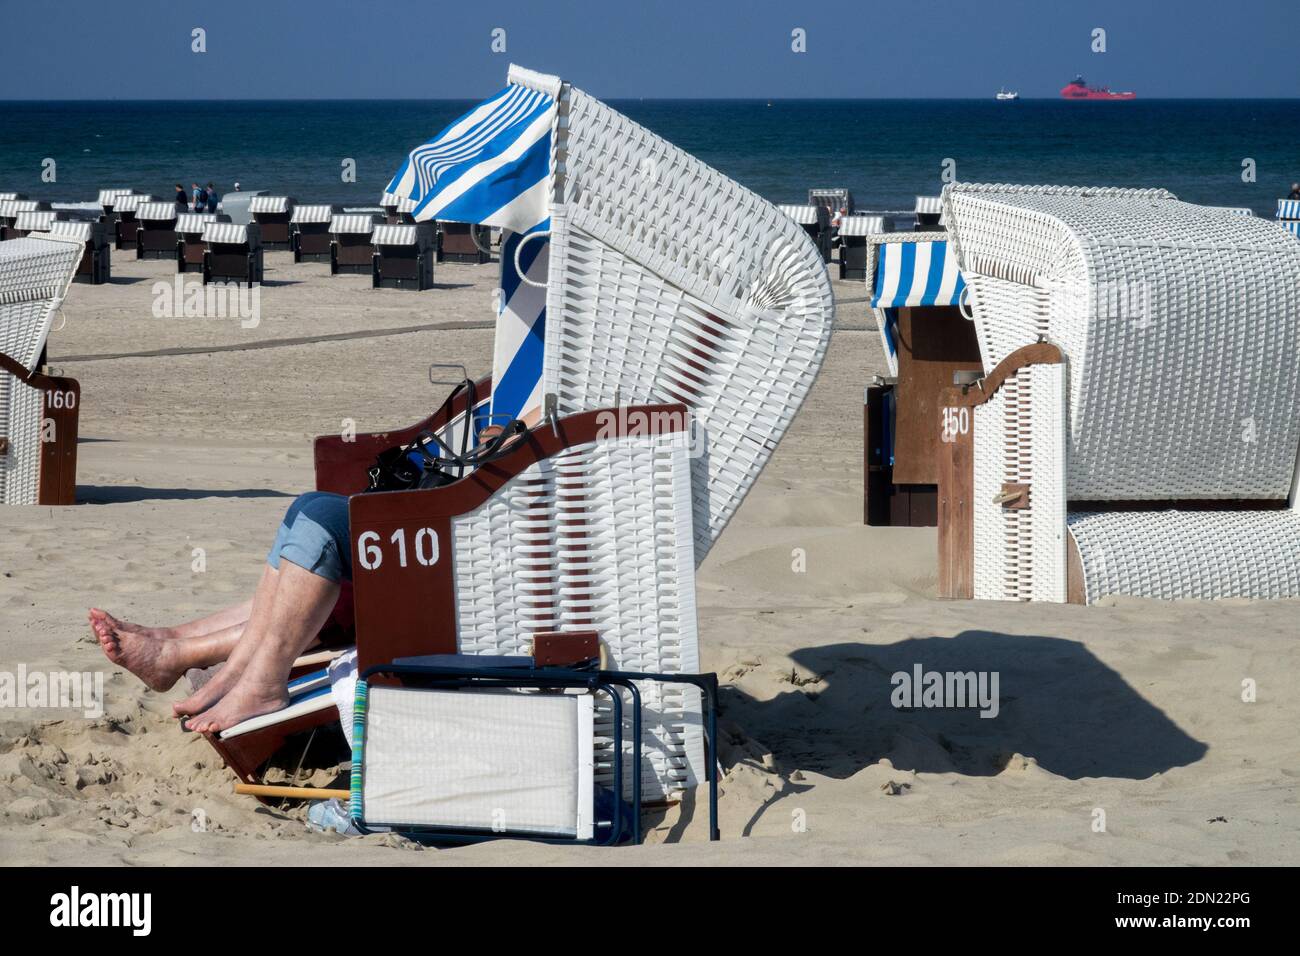 La gente toma el sol en la playa de arena y protegida de la Viento en la silla de playa de mimbre Alemania Mar Báltico Foto de stock